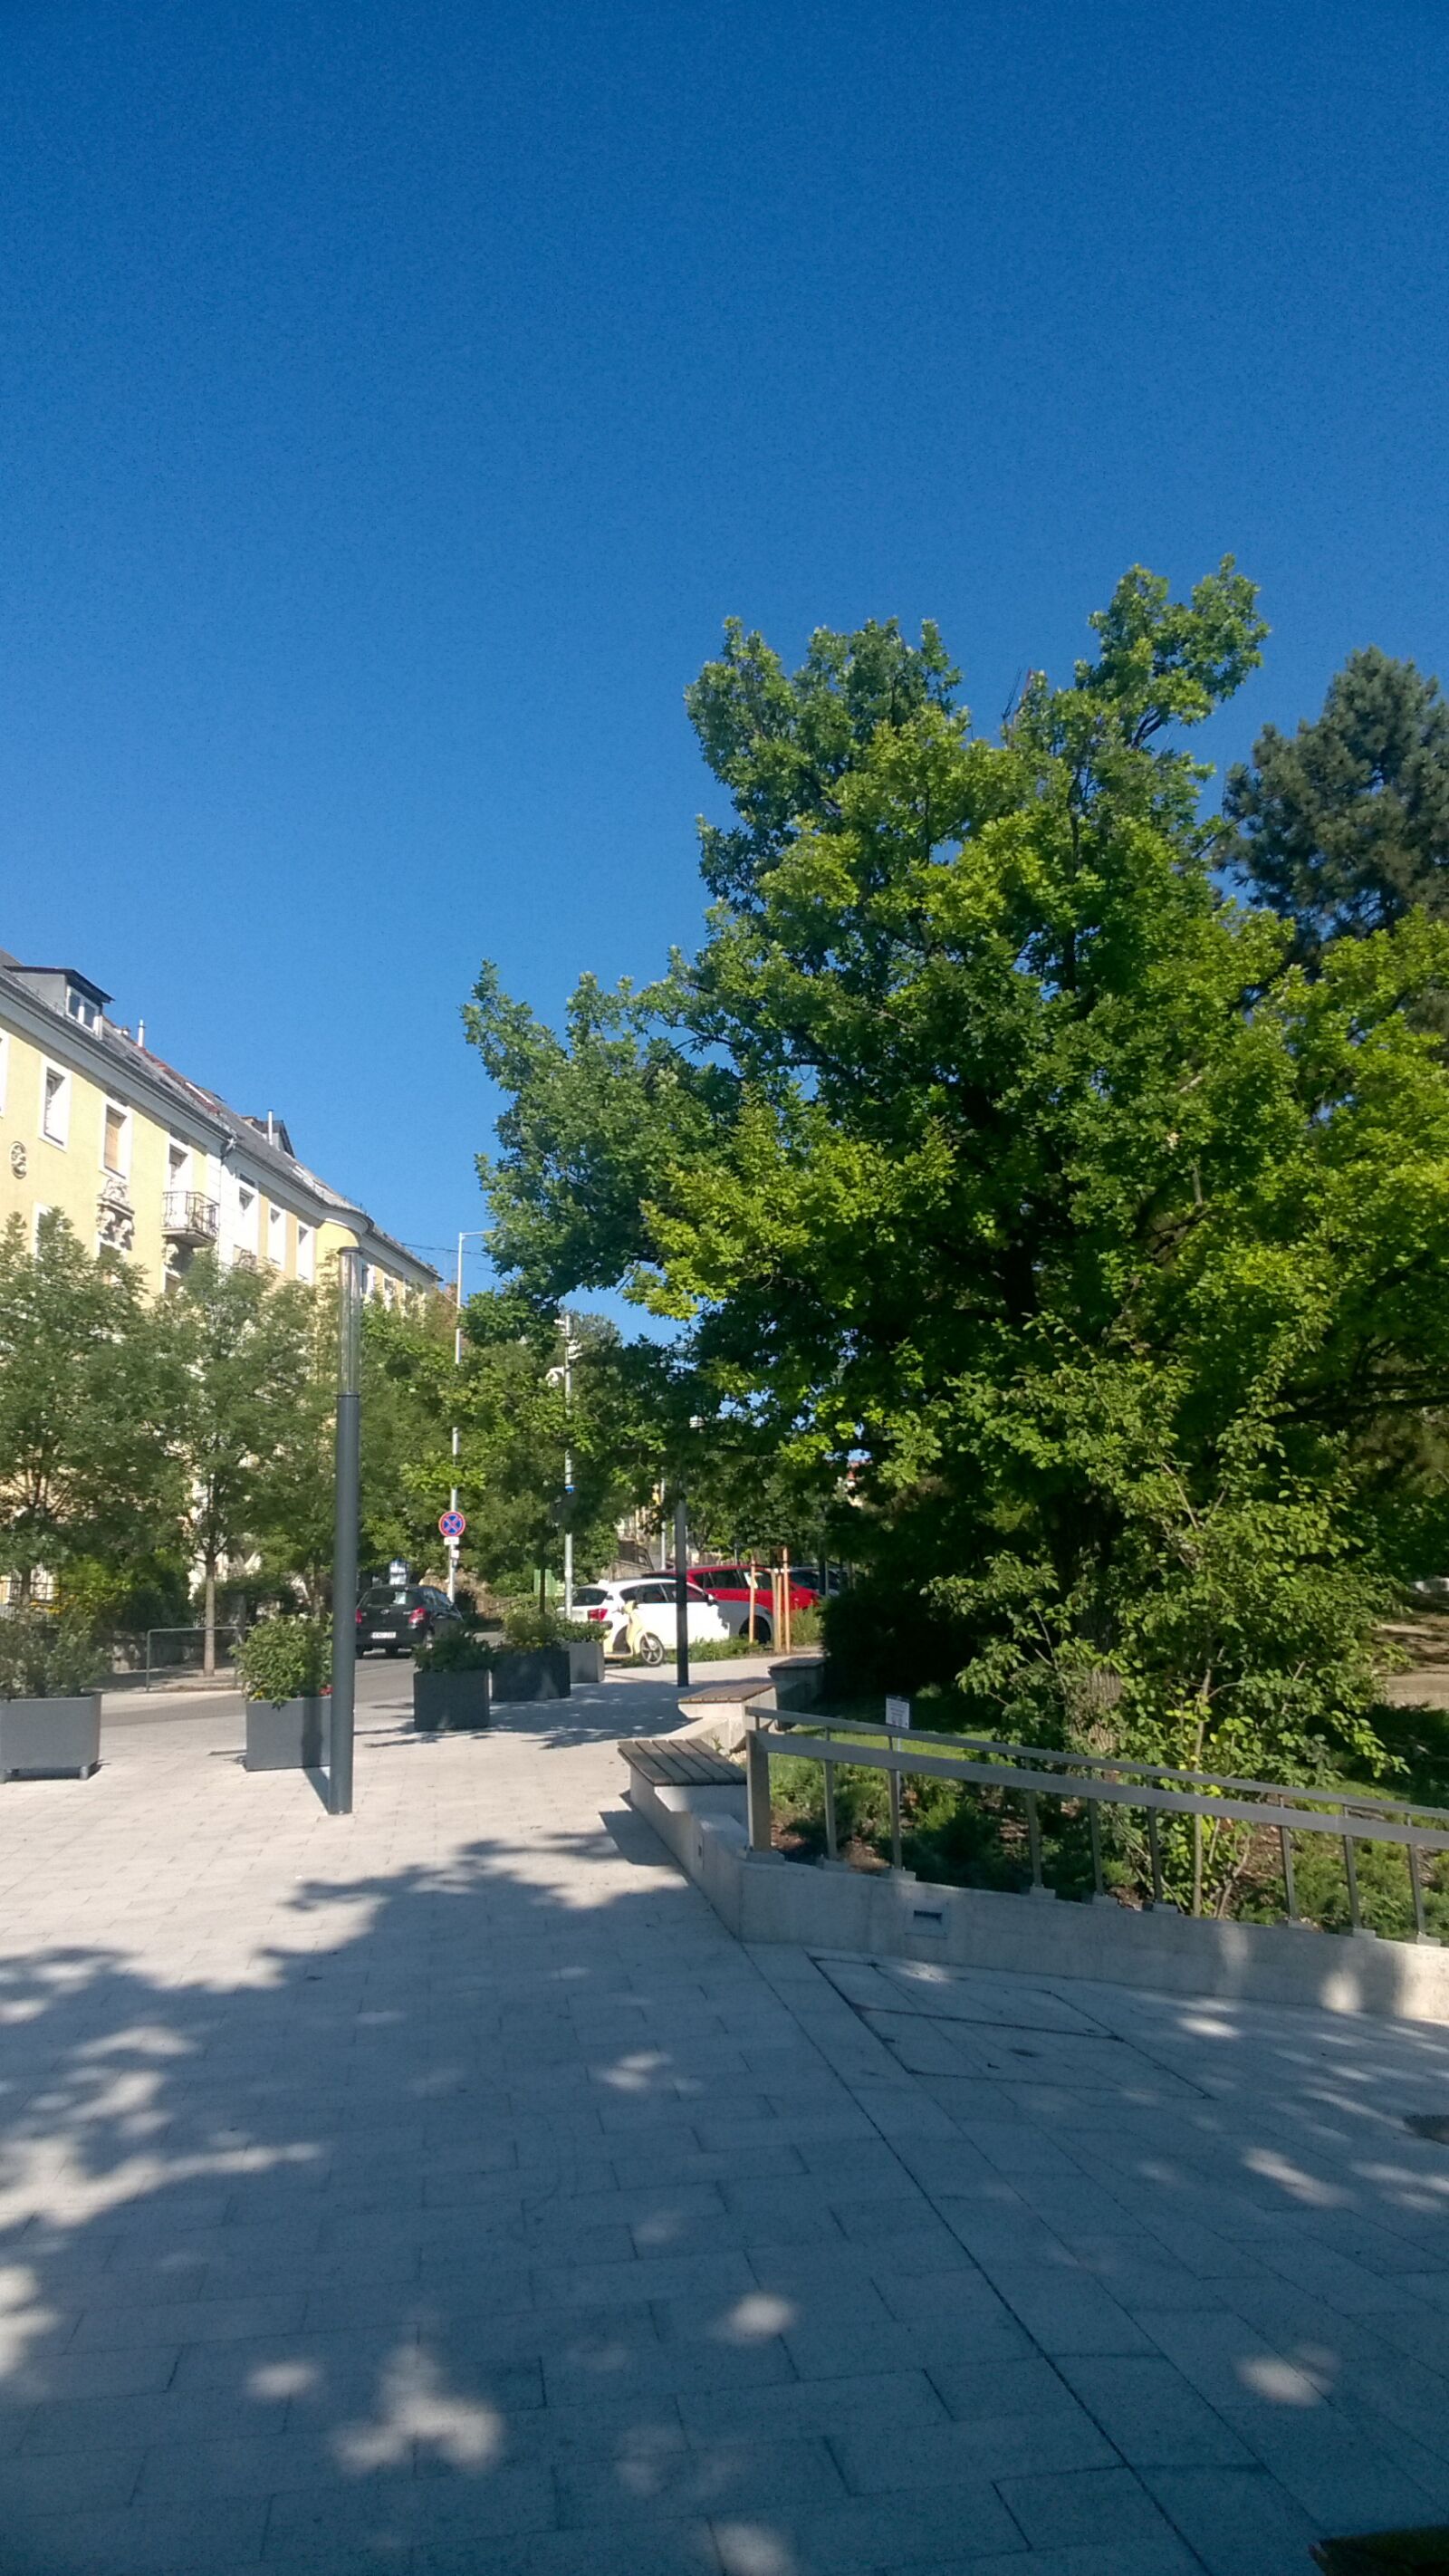 Nokia Lumia 735 sample photo. City, street, trees photography